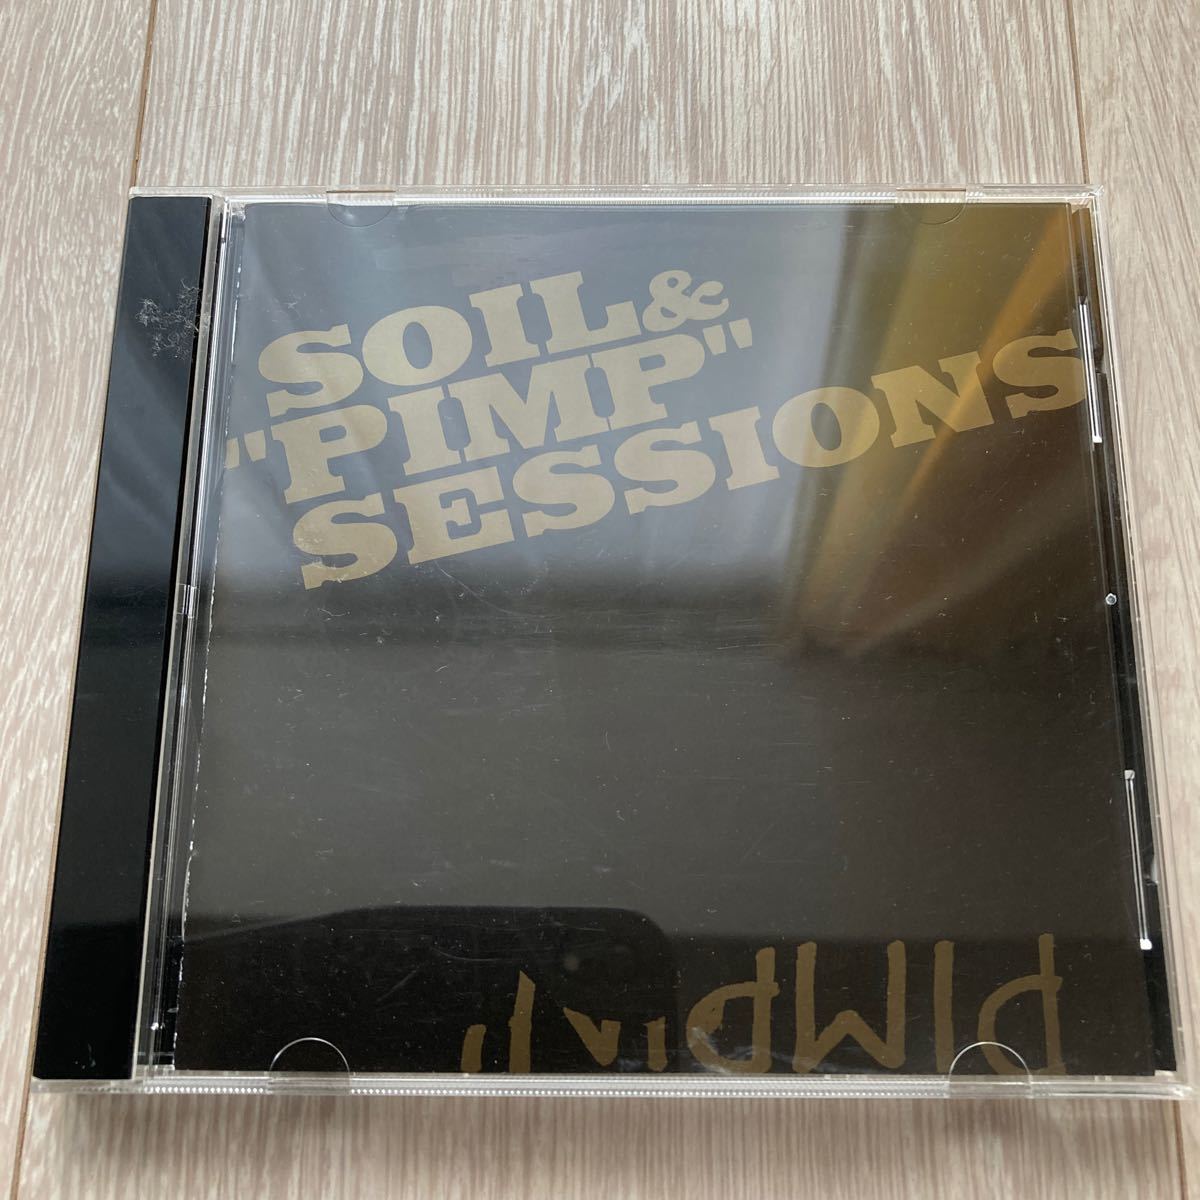 SOIL&PIMP SESSIONS  PIMPIN  CD